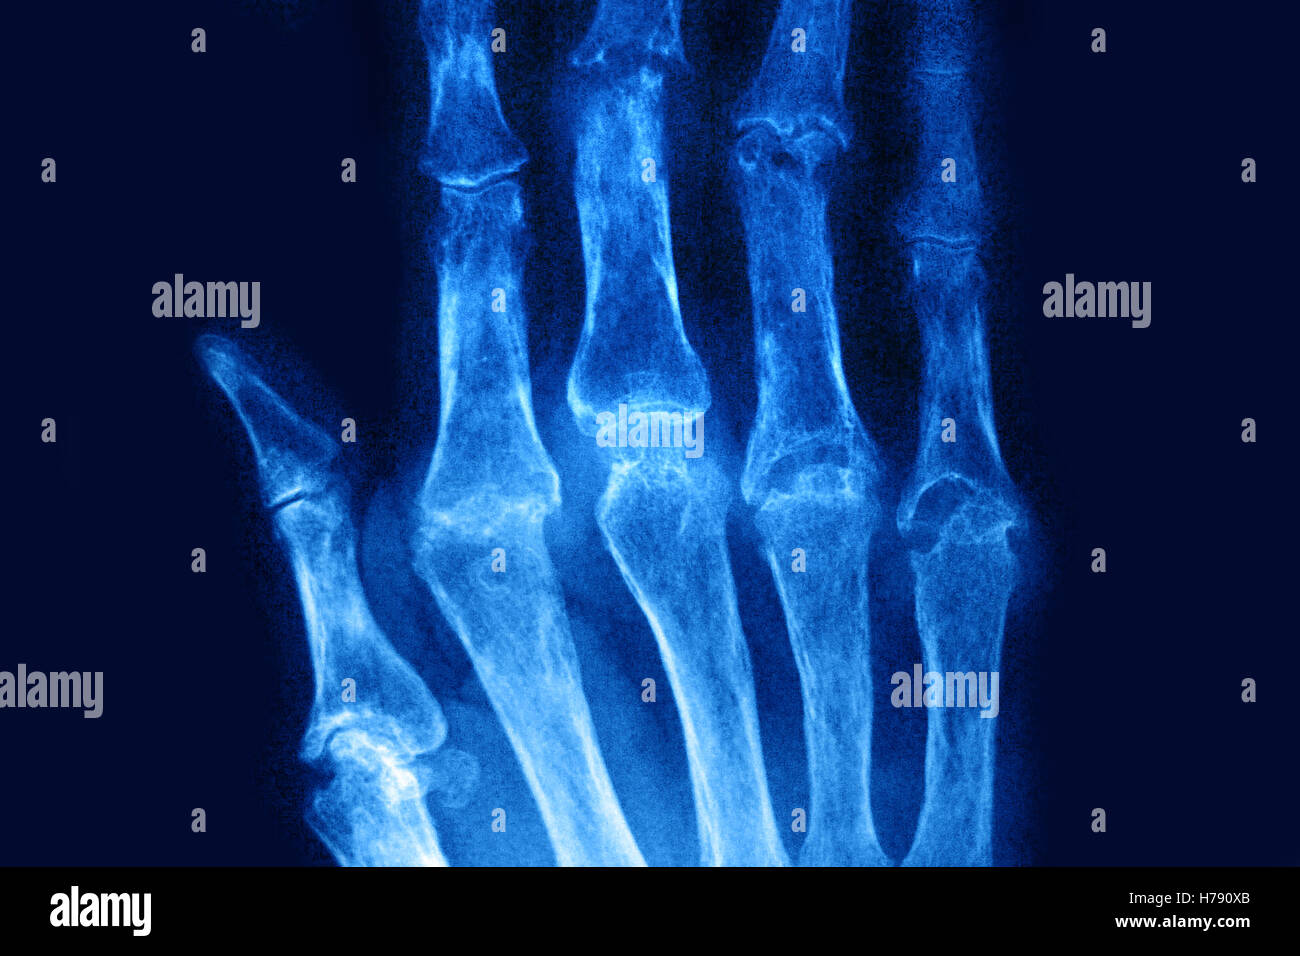 RHEUMATOID ARTHRITIS, X-RAY Stock Photo